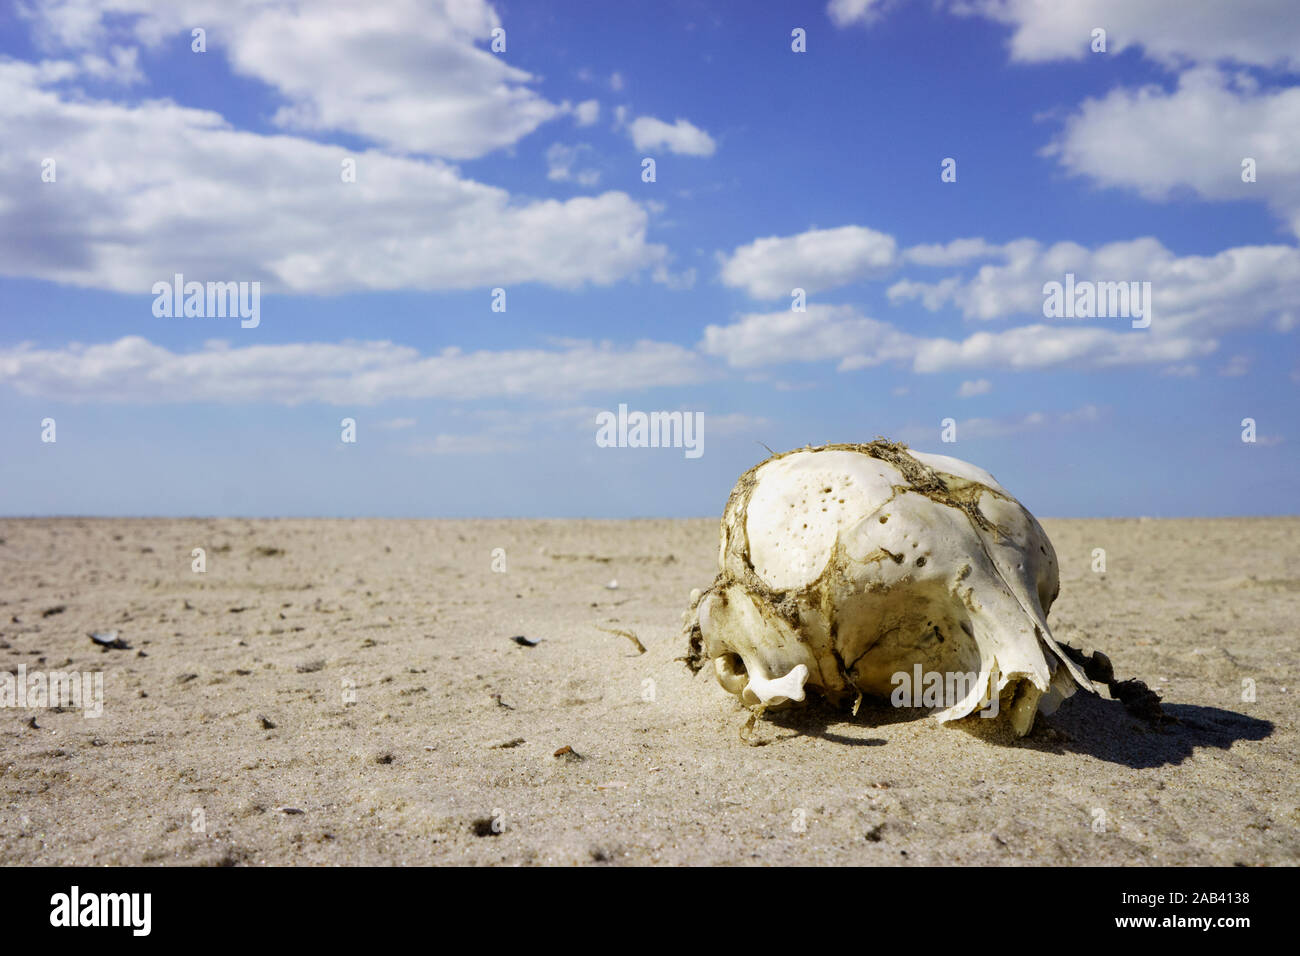 Ein Schädelknochen auf einer Sandbank im Watt |A skull on a sand bank in the Wadden| Stock Photo